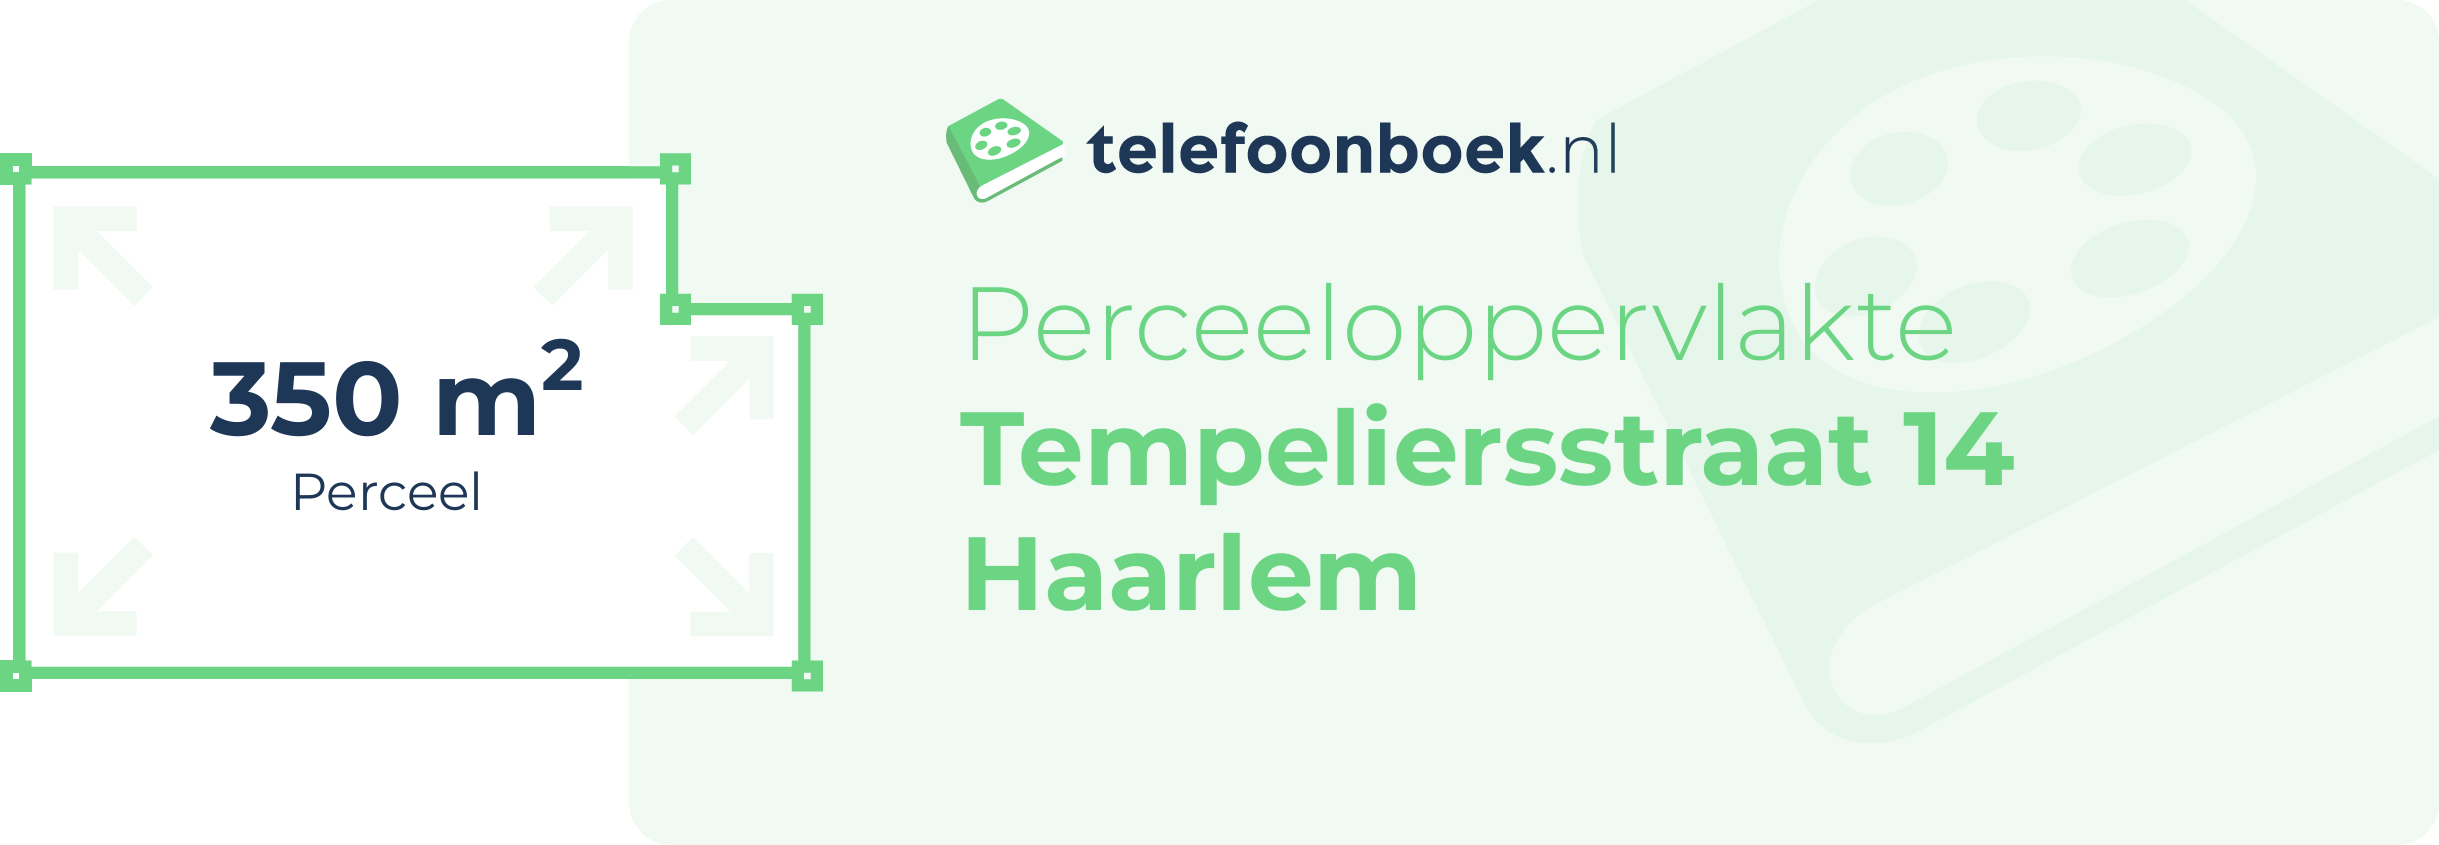 Perceeloppervlakte Tempeliersstraat 14 Haarlem